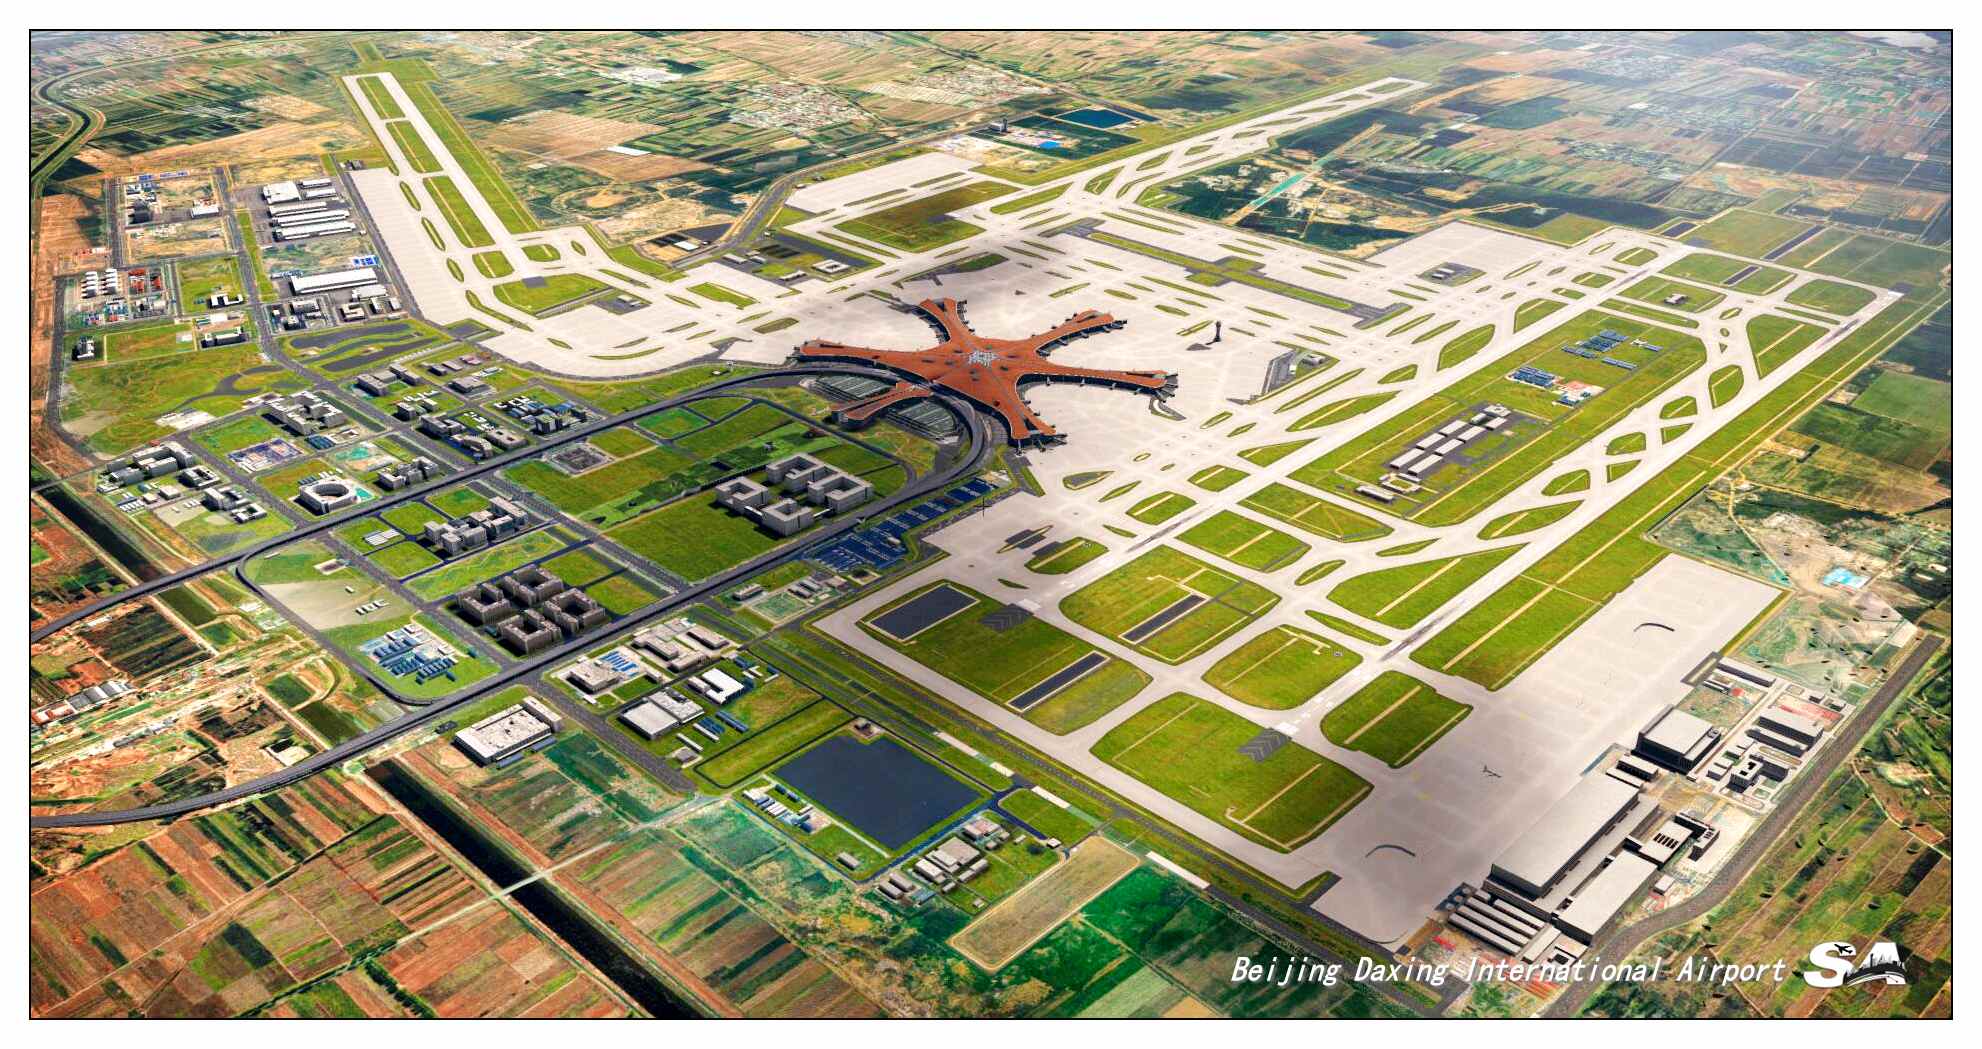 【X-Plane】ZBAD北京大兴国际机场-正式发布-9494 